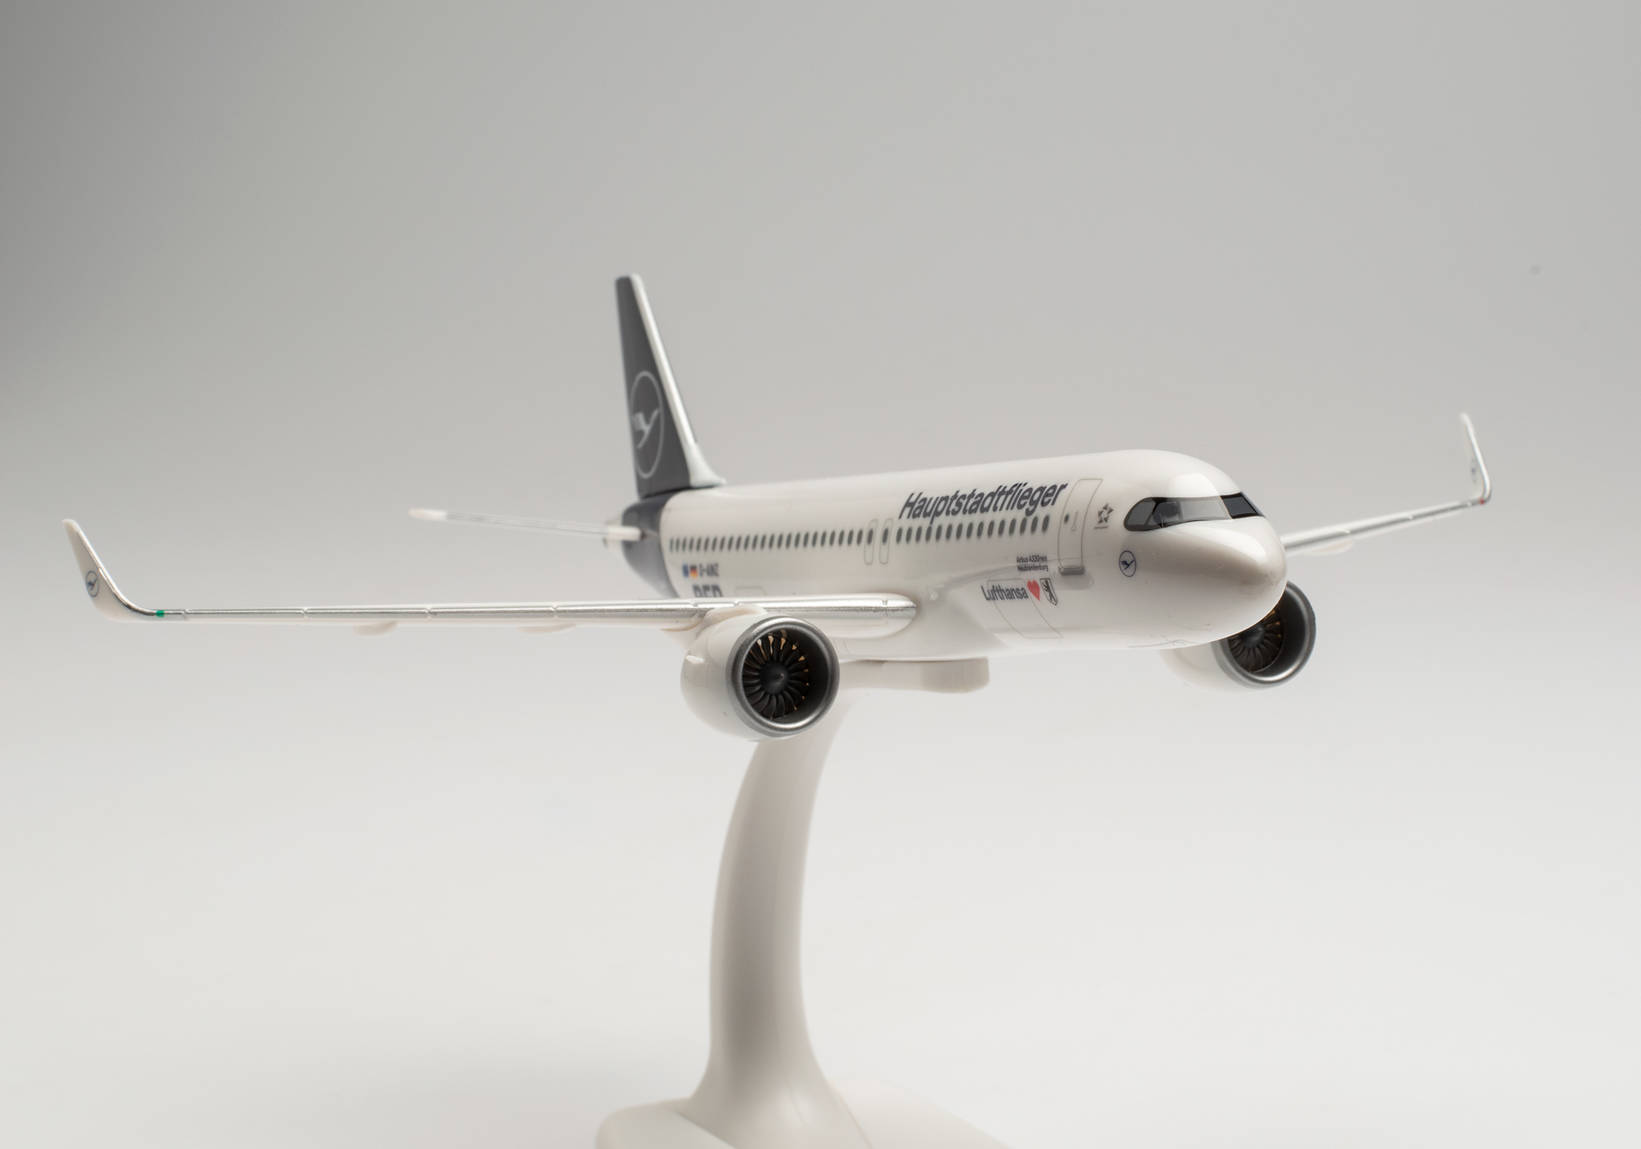 Snap-Fit: Lufthansa Airbus A320neo “Hauptstadtflieger” – D-AINZ